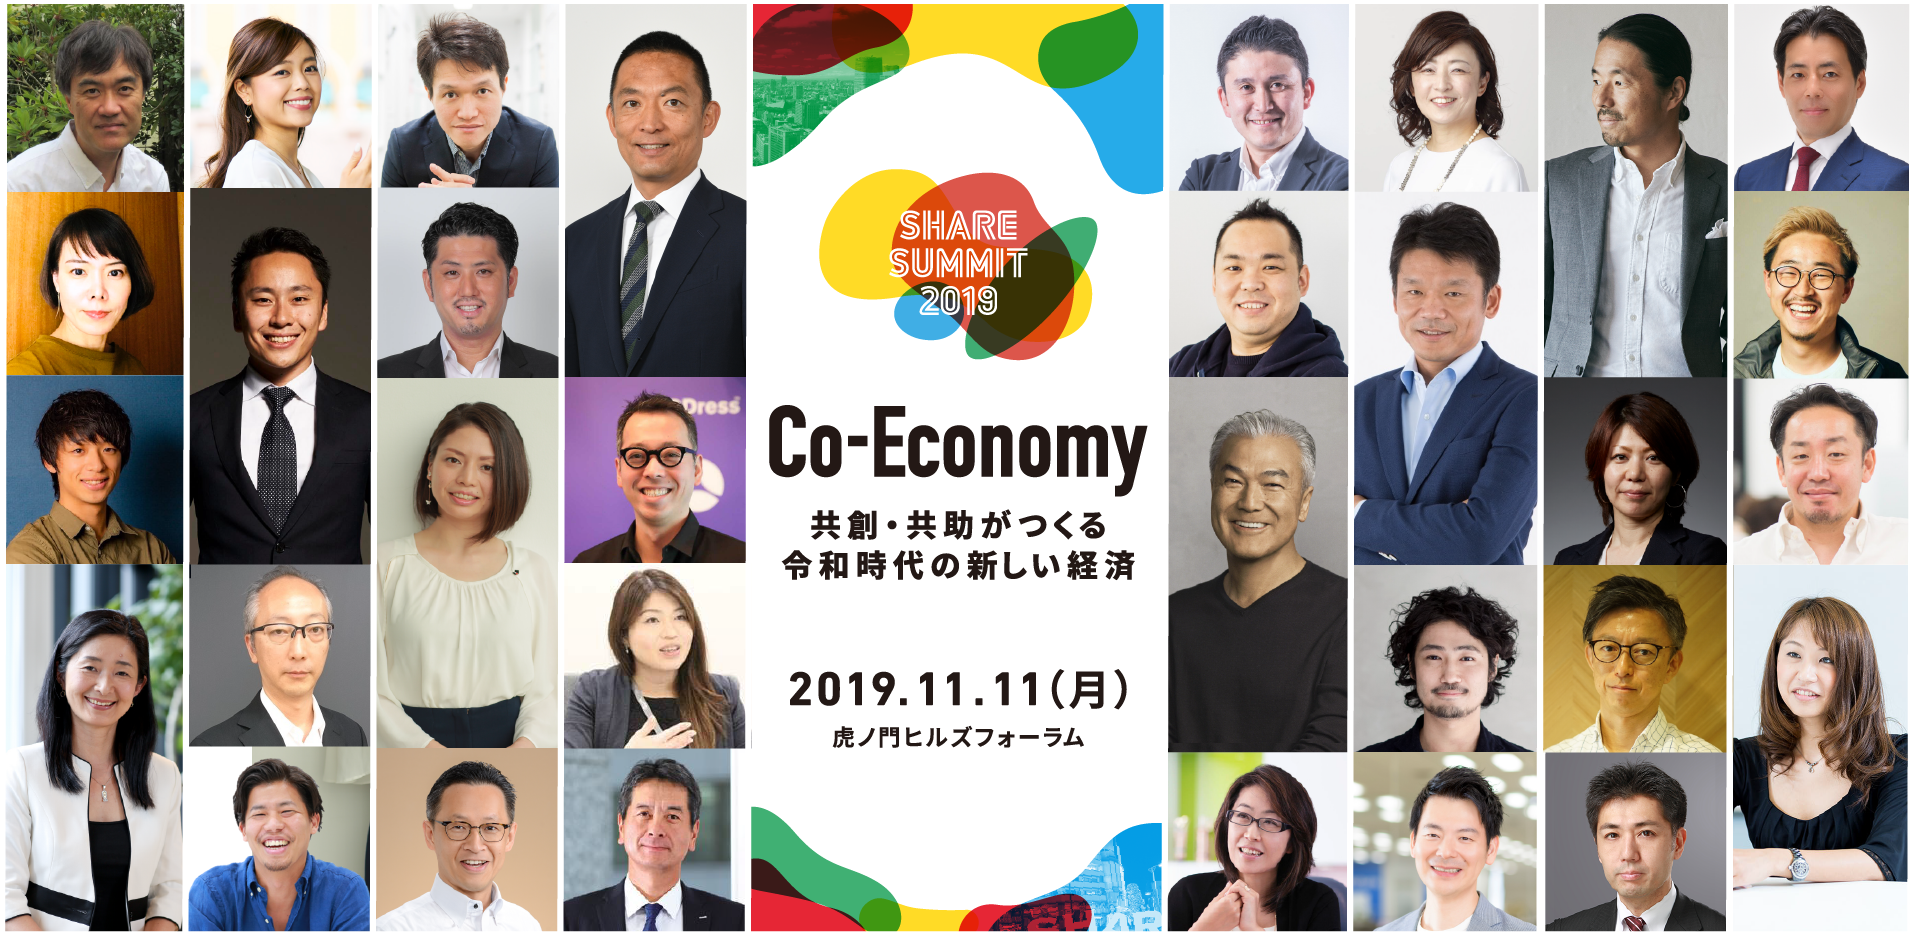 日本最大シェアリングエコノミーの祭典 SHARE SUMMIT 2019 に  ガイアックス代表の上田祐司が登壇します